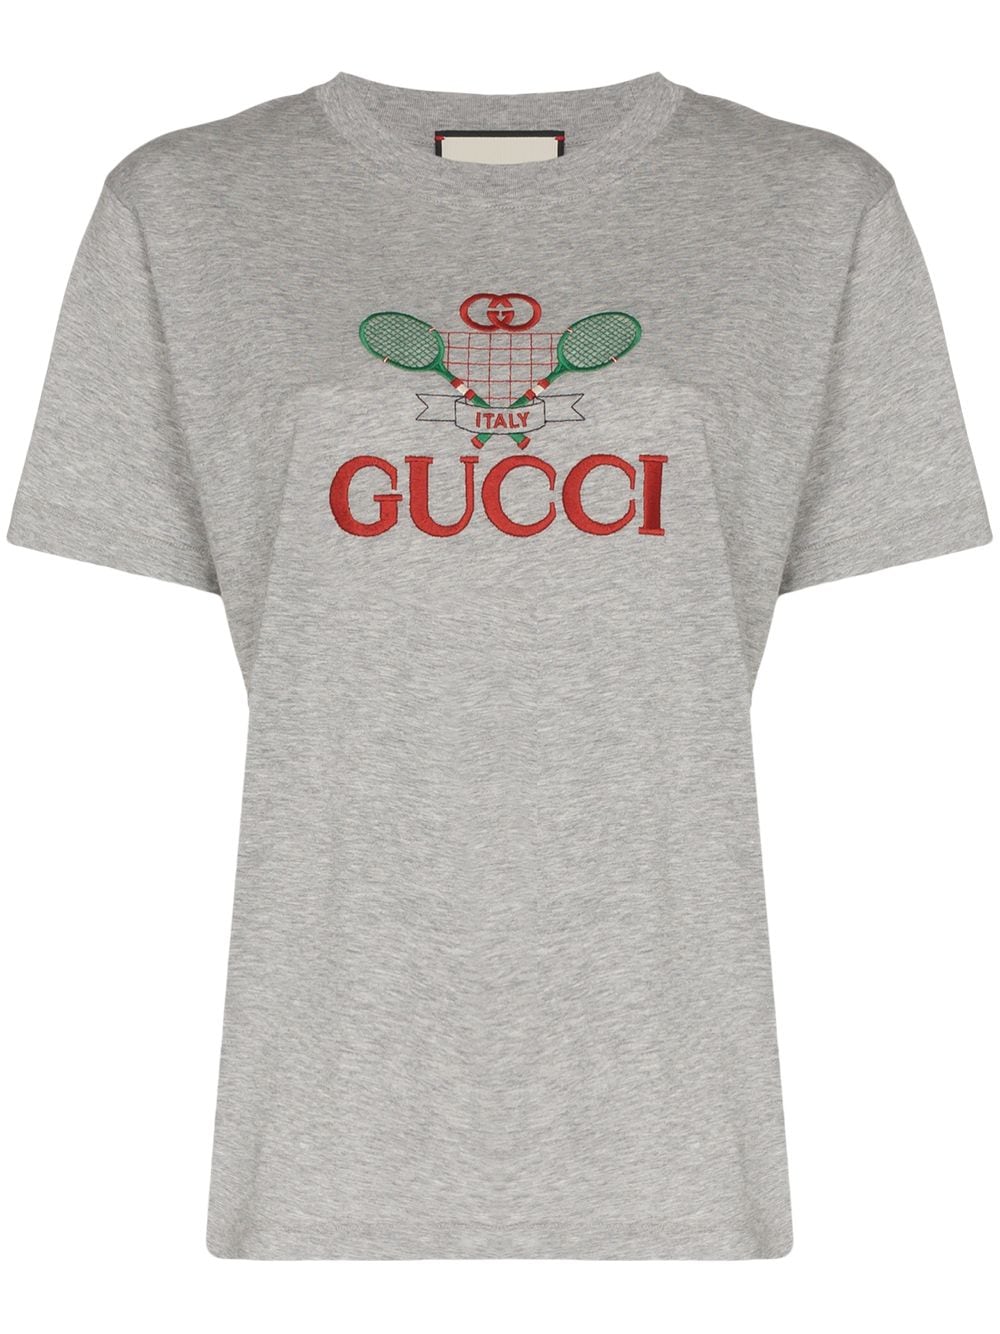 фото Gucci футболка с логотипом